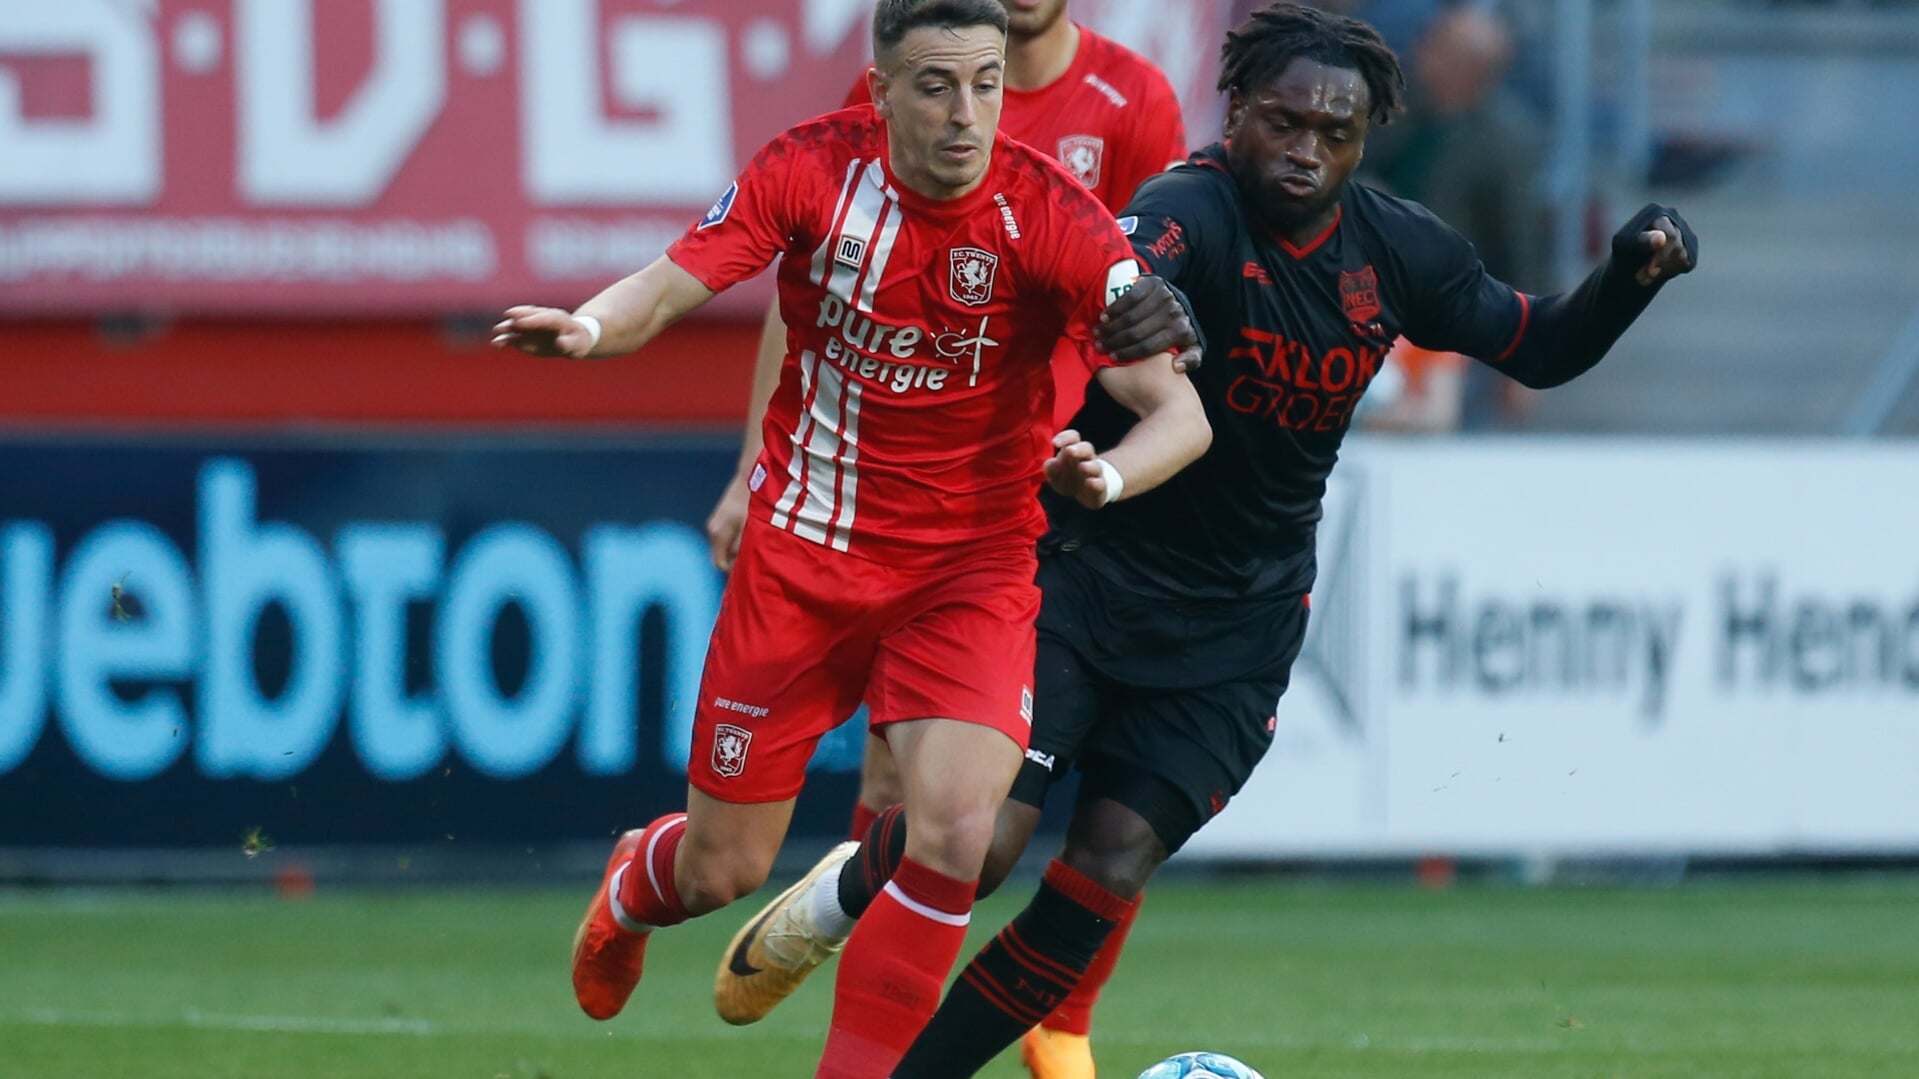 Julio Pleguezuelo in actie in de wedstrijd tegen NEC (Foto: Bas Everhard/FC Twente Media)